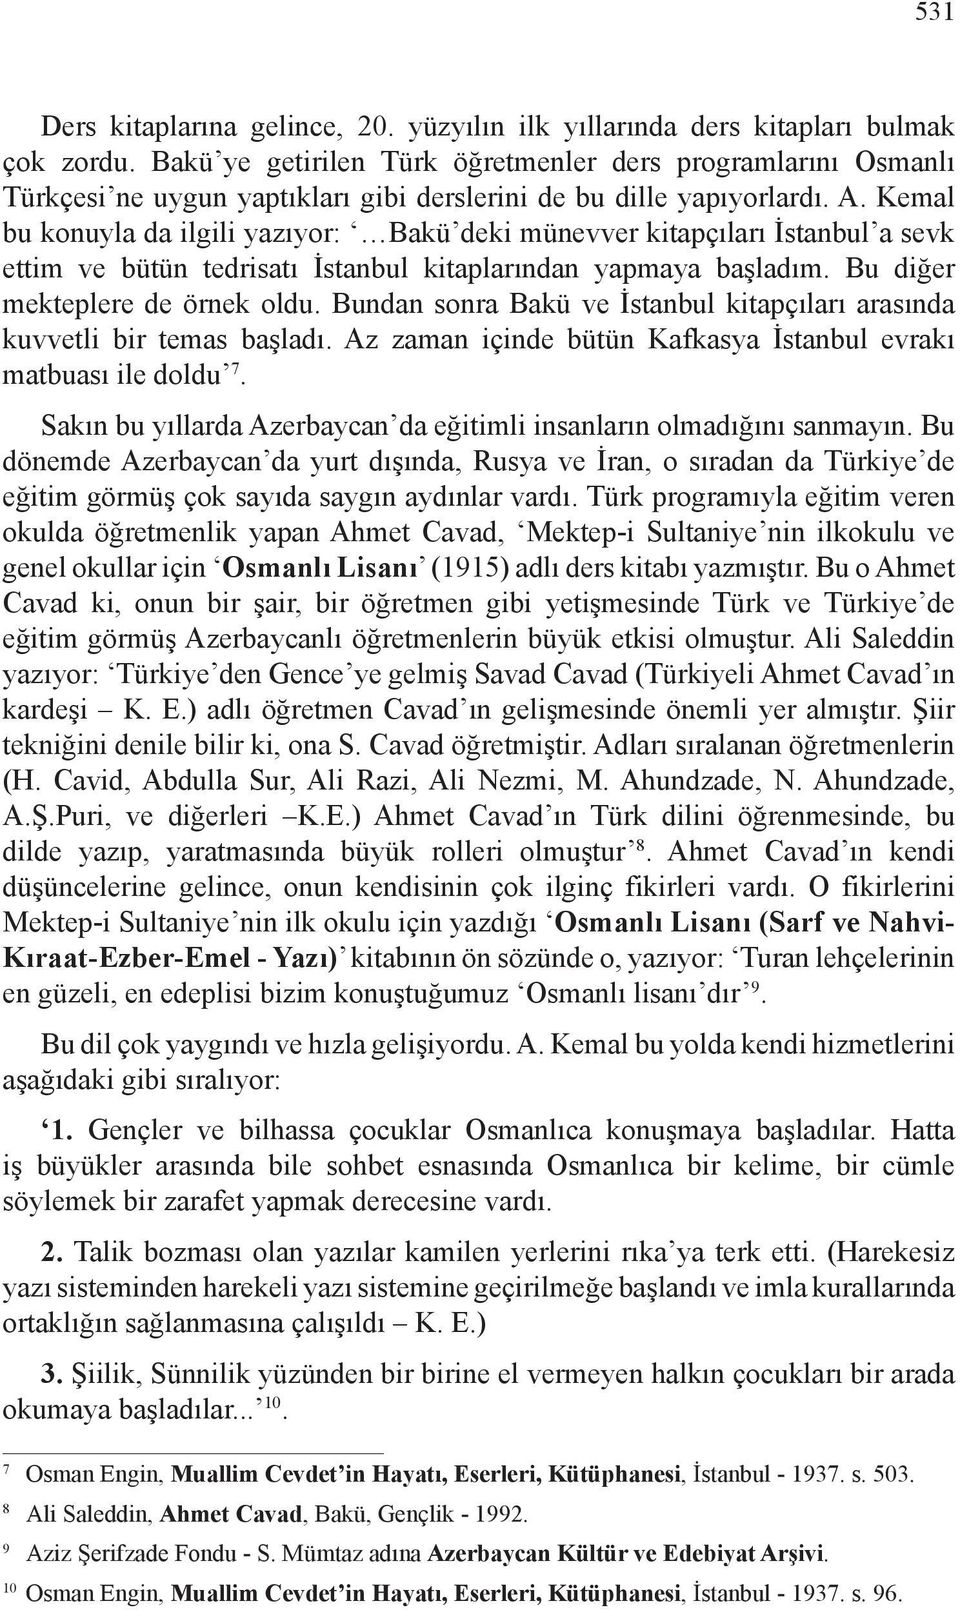 Kemal bu konuyla da ilgili yazıyor: Bakü deki münevver kitapçıları İstanbul a sevk ettim ve bütün tedrisatı İstanbul kitaplarından yapmaya başladım. Bu diğer mekteplere de örnek oldu.